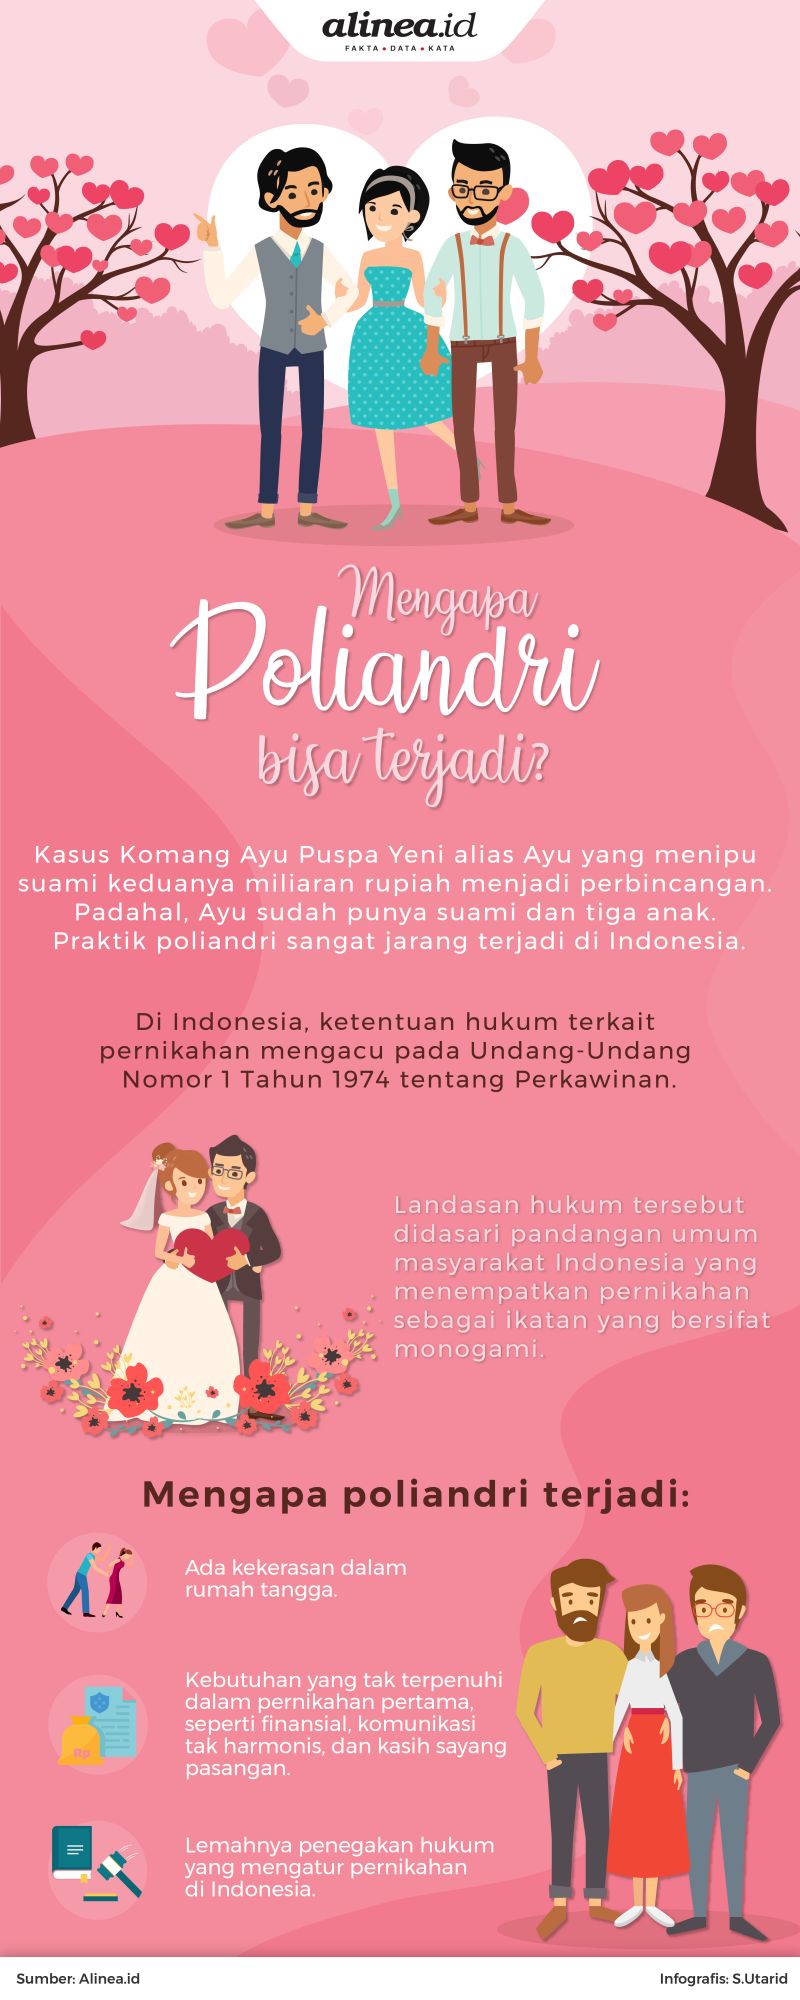 Aturan hukum di Indonesia menganut hukum pernikahan monogami.